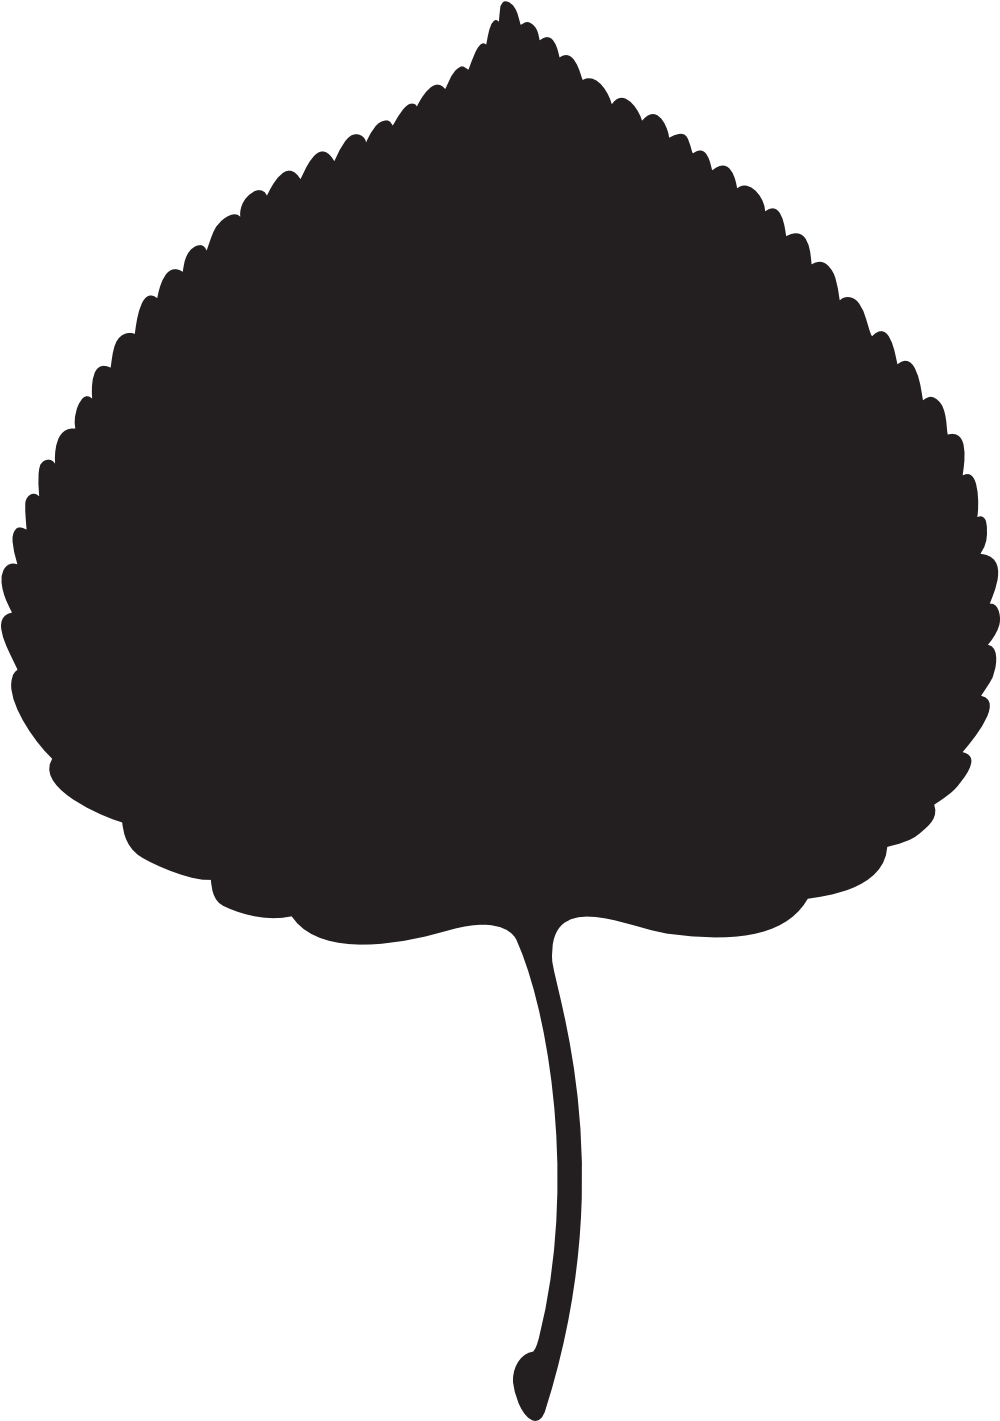 Logo Files For Download - Aspen Leaf Png (1000x1434)